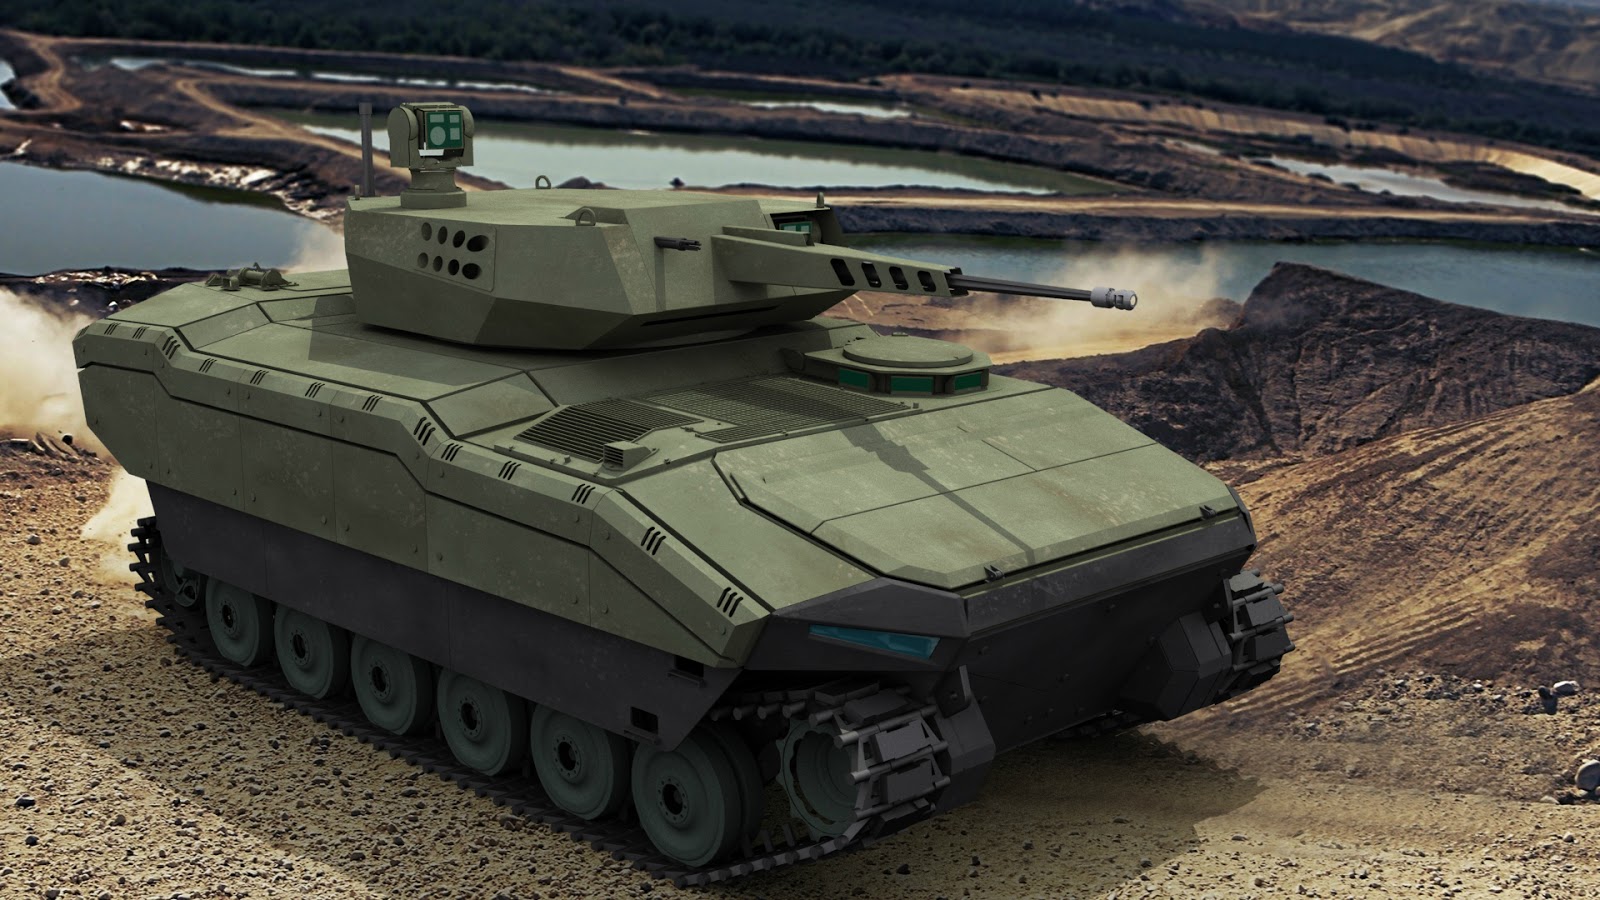 Turca FNSS apresenta seu novo veículo Kaplan (Tiger) na IDEF 15